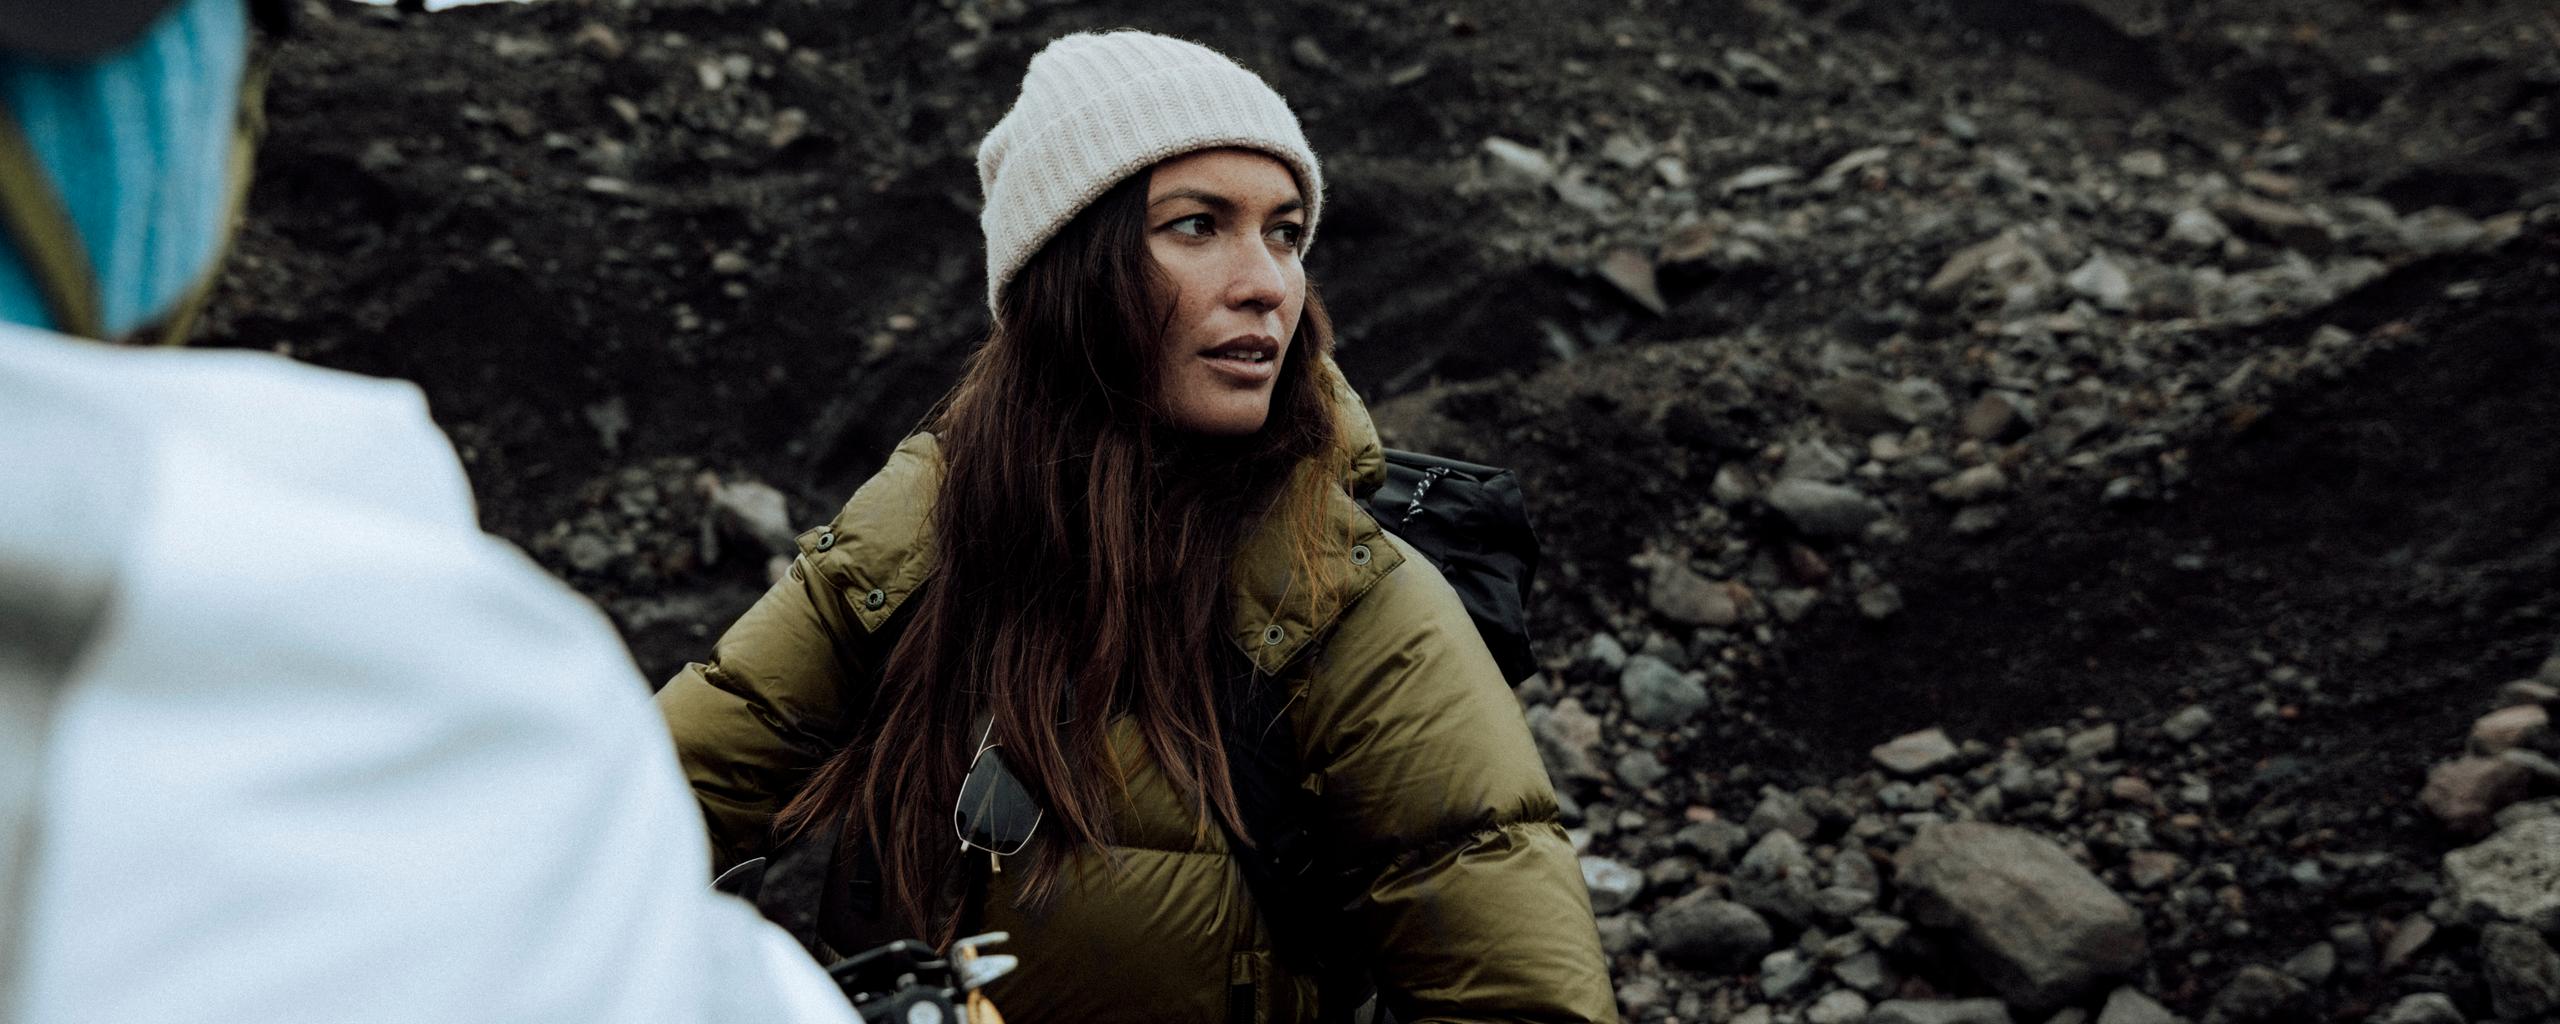 Woman wearing puffer jacket on rocky Iceland terrain